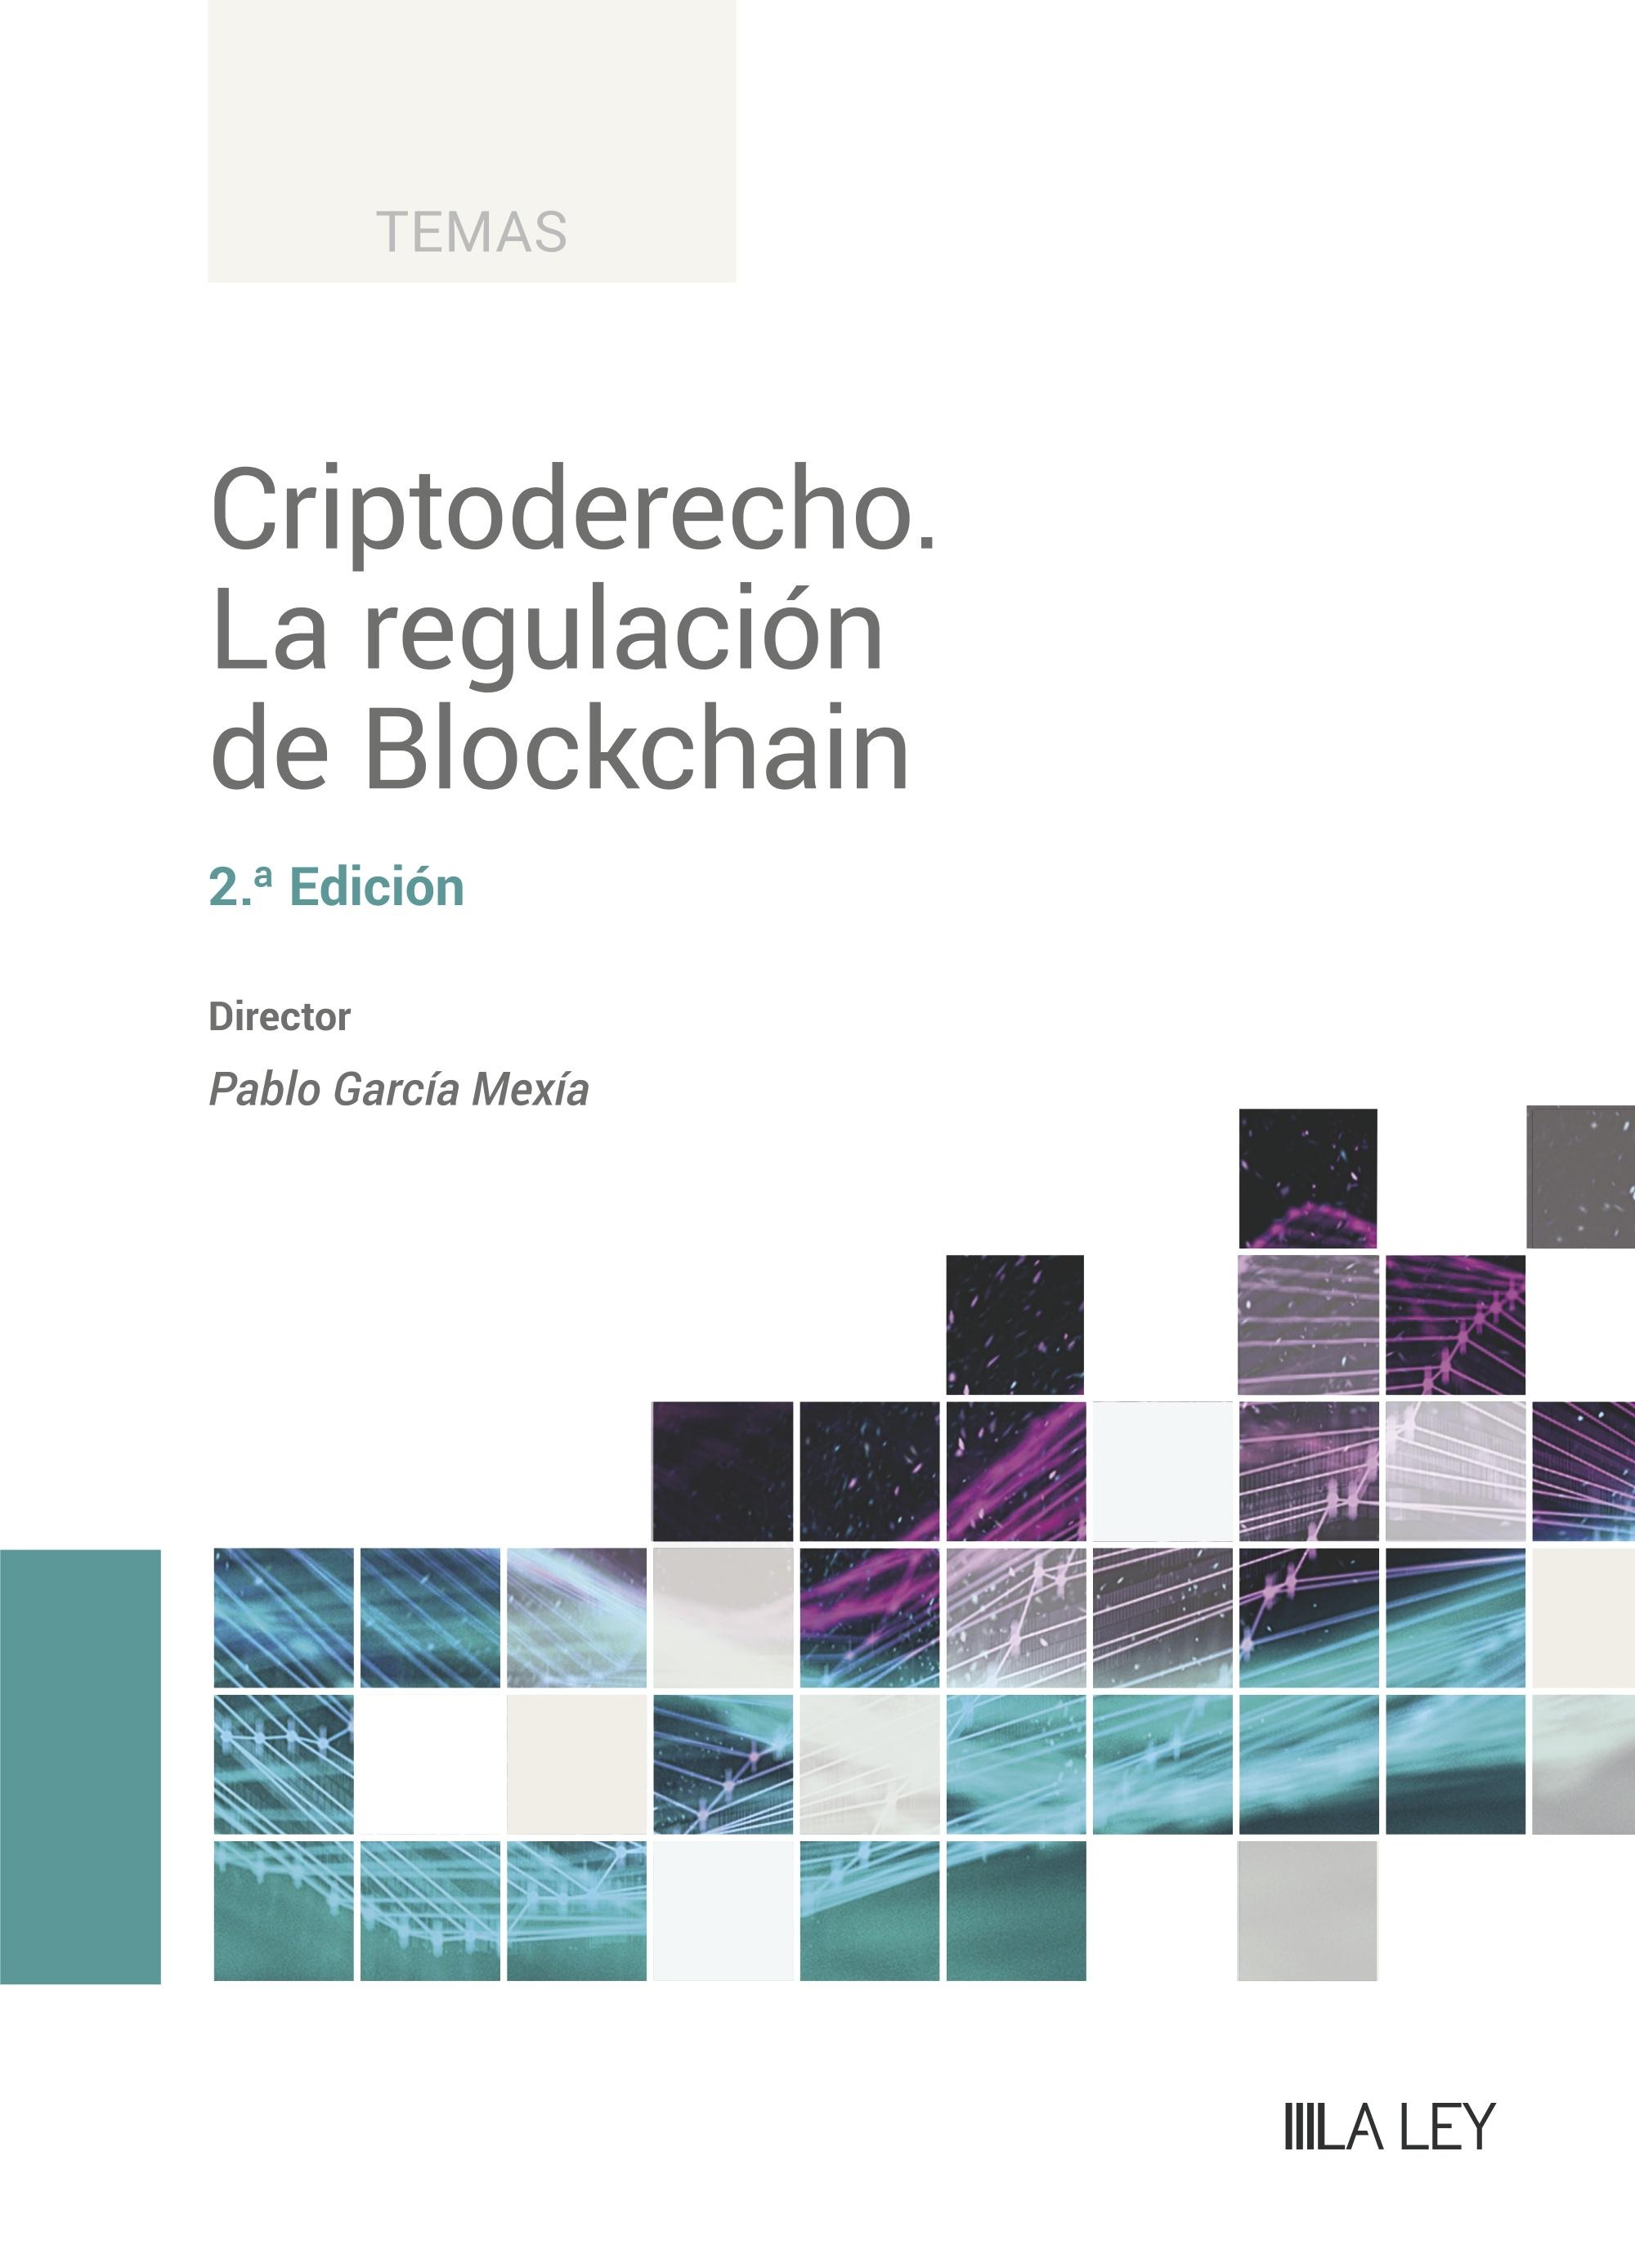 Criptoderecho "La regulación de Blockchain"